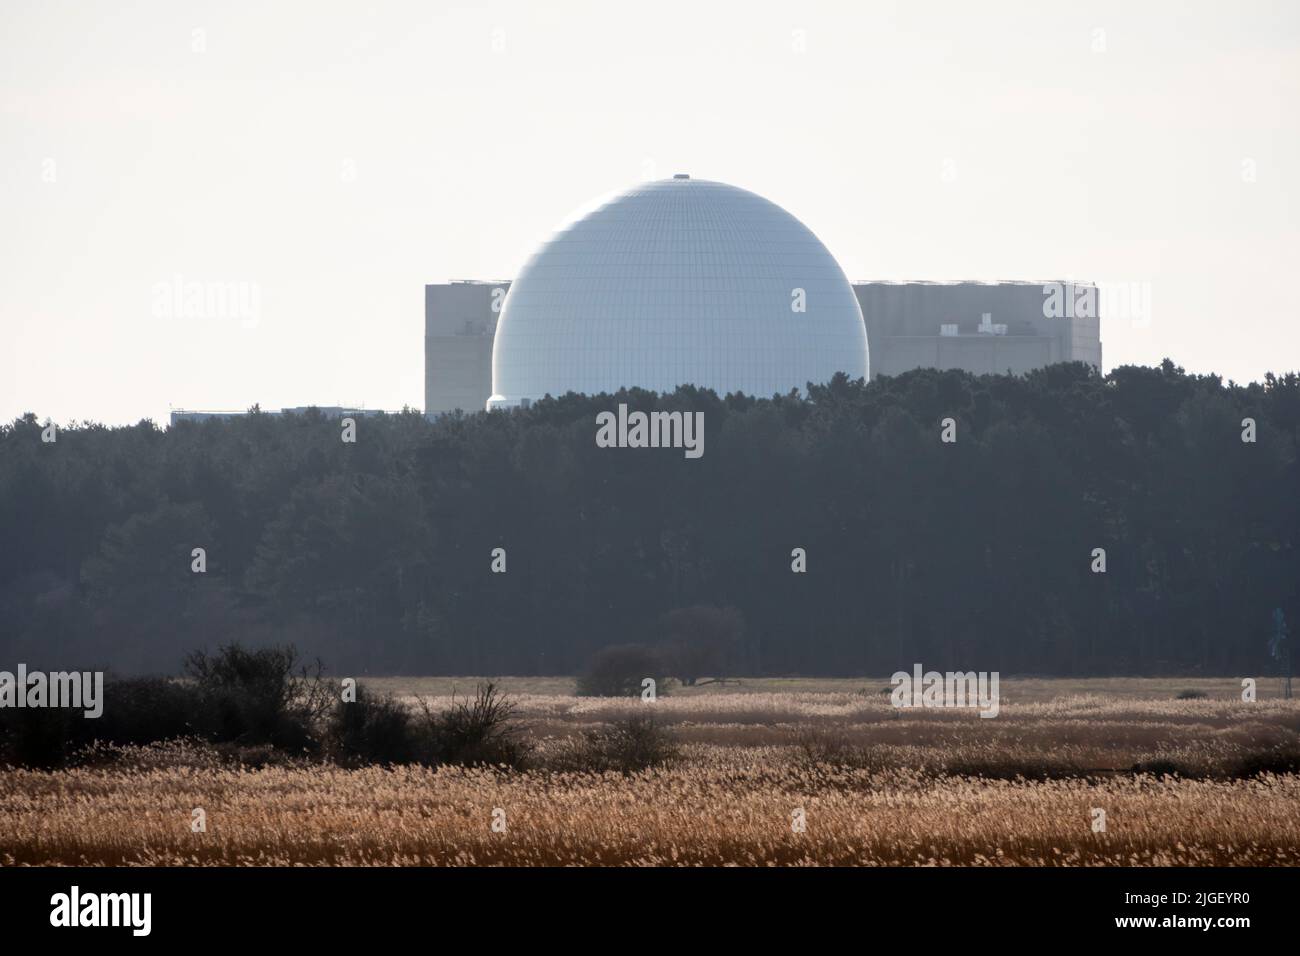 Las centrales nucleares de Sizewell se encuentran en el horizonte detrás de los bosques con humedales en primer plano, vistos a través de una ligera neblina de calor resplandeciente Foto de stock